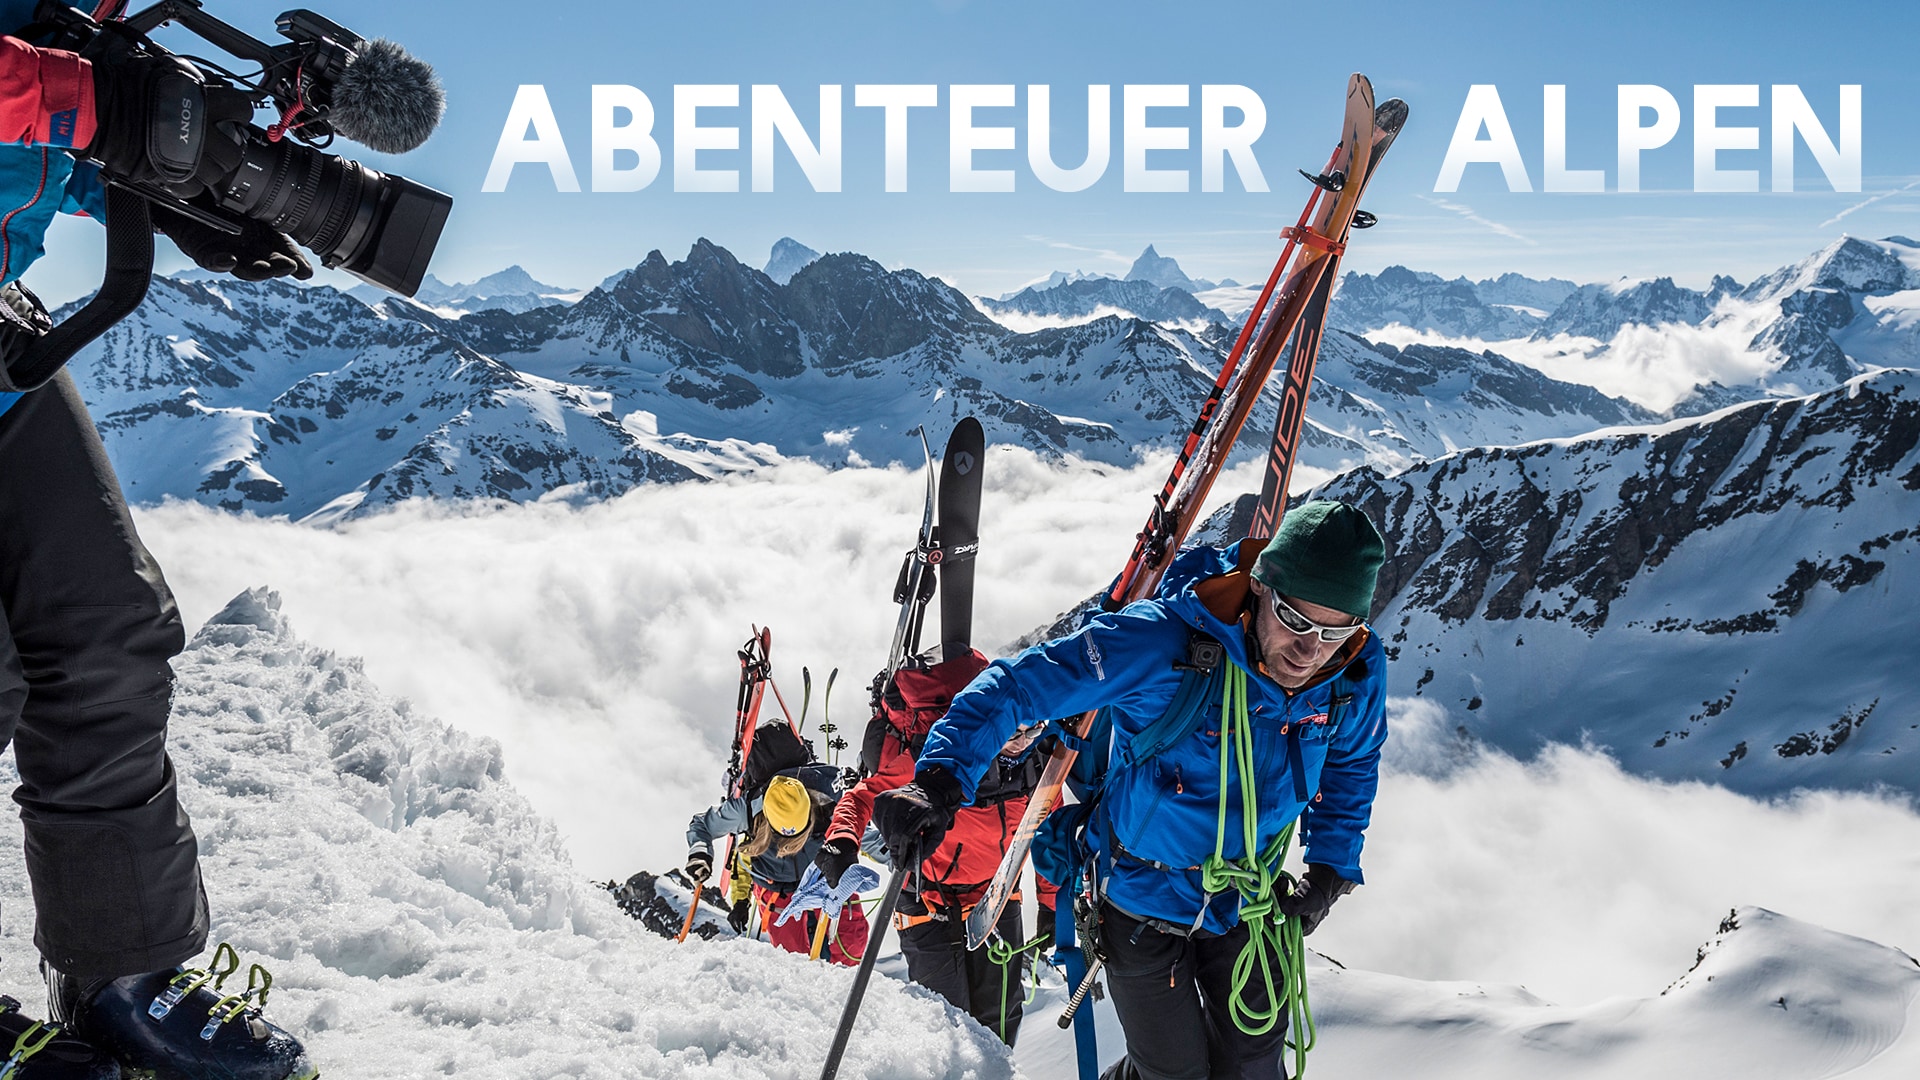 Abenteuer Alpen - Die Skitour des Lebens  